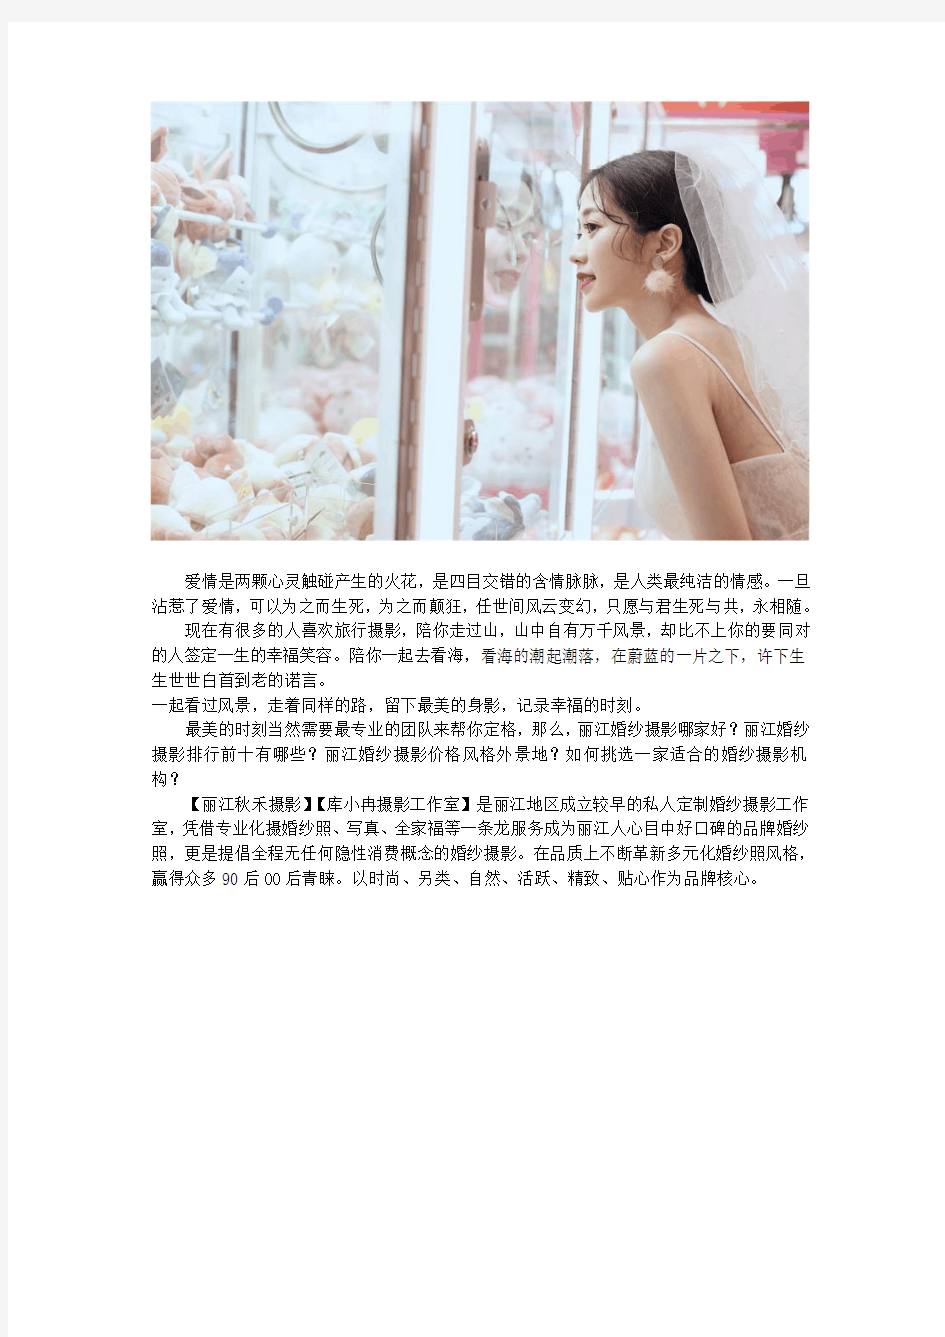 丽江古城拍婚纱照哪家比较好